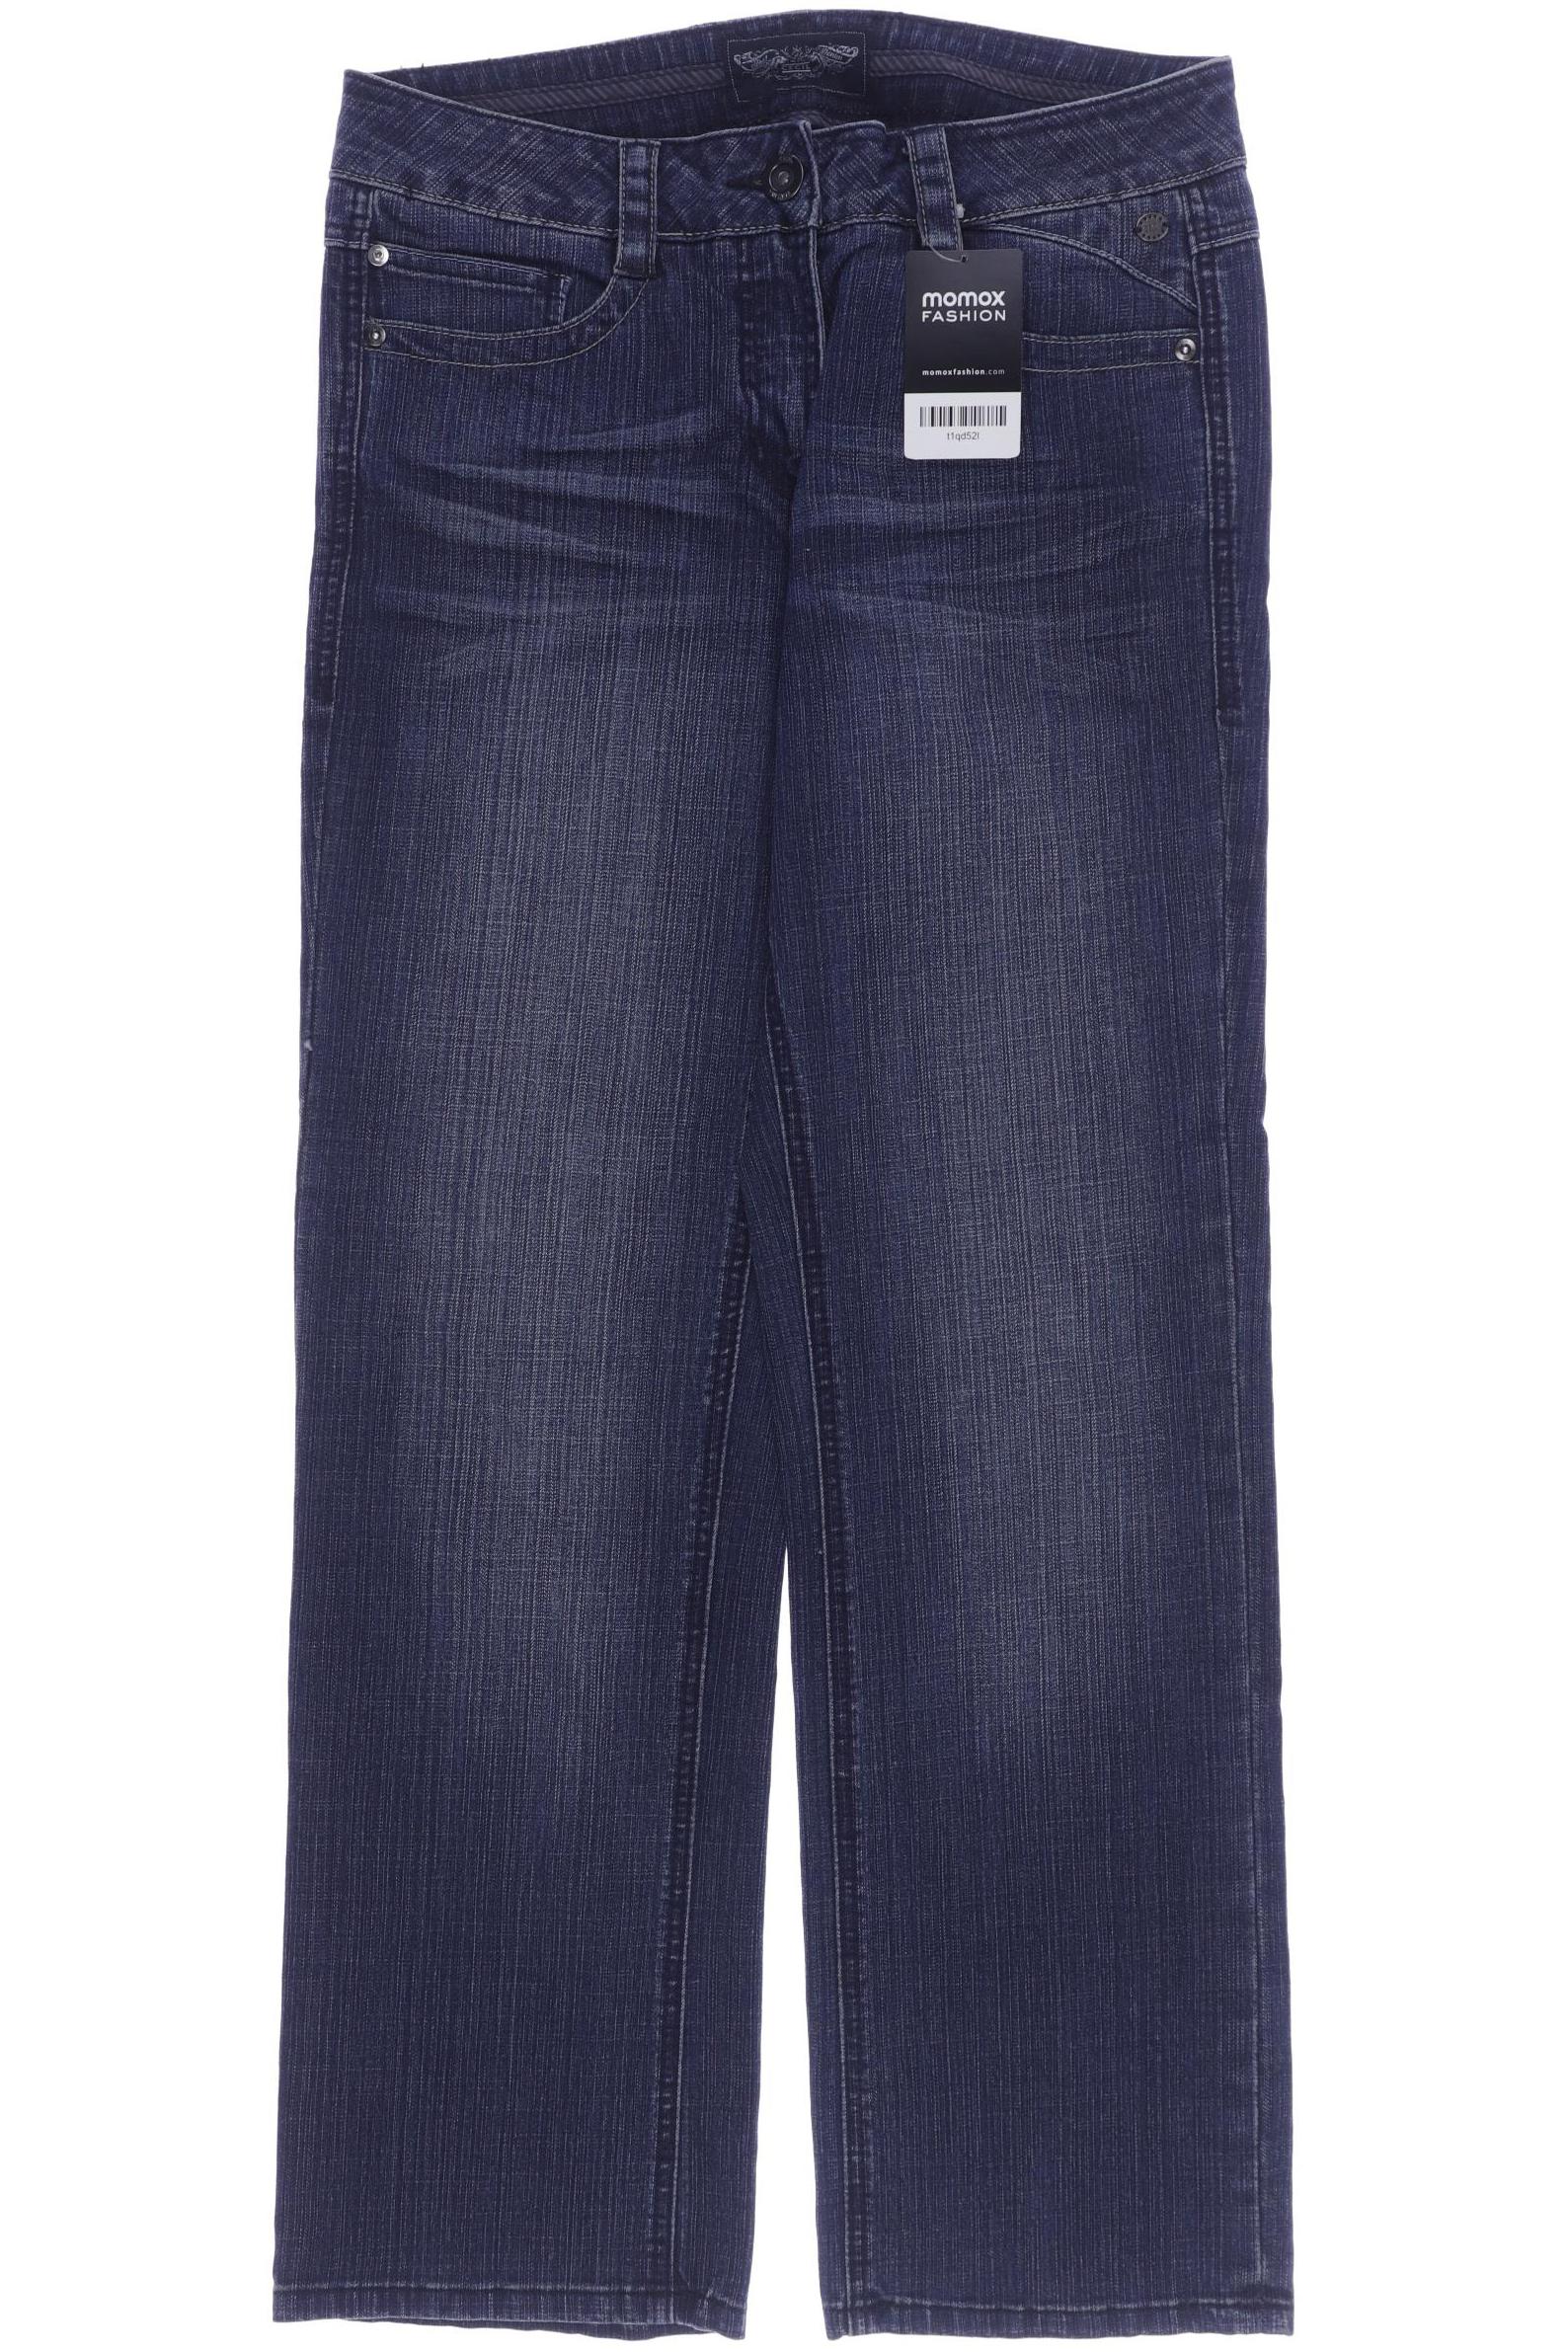 CECIL Damen Jeans, marineblau von cecil